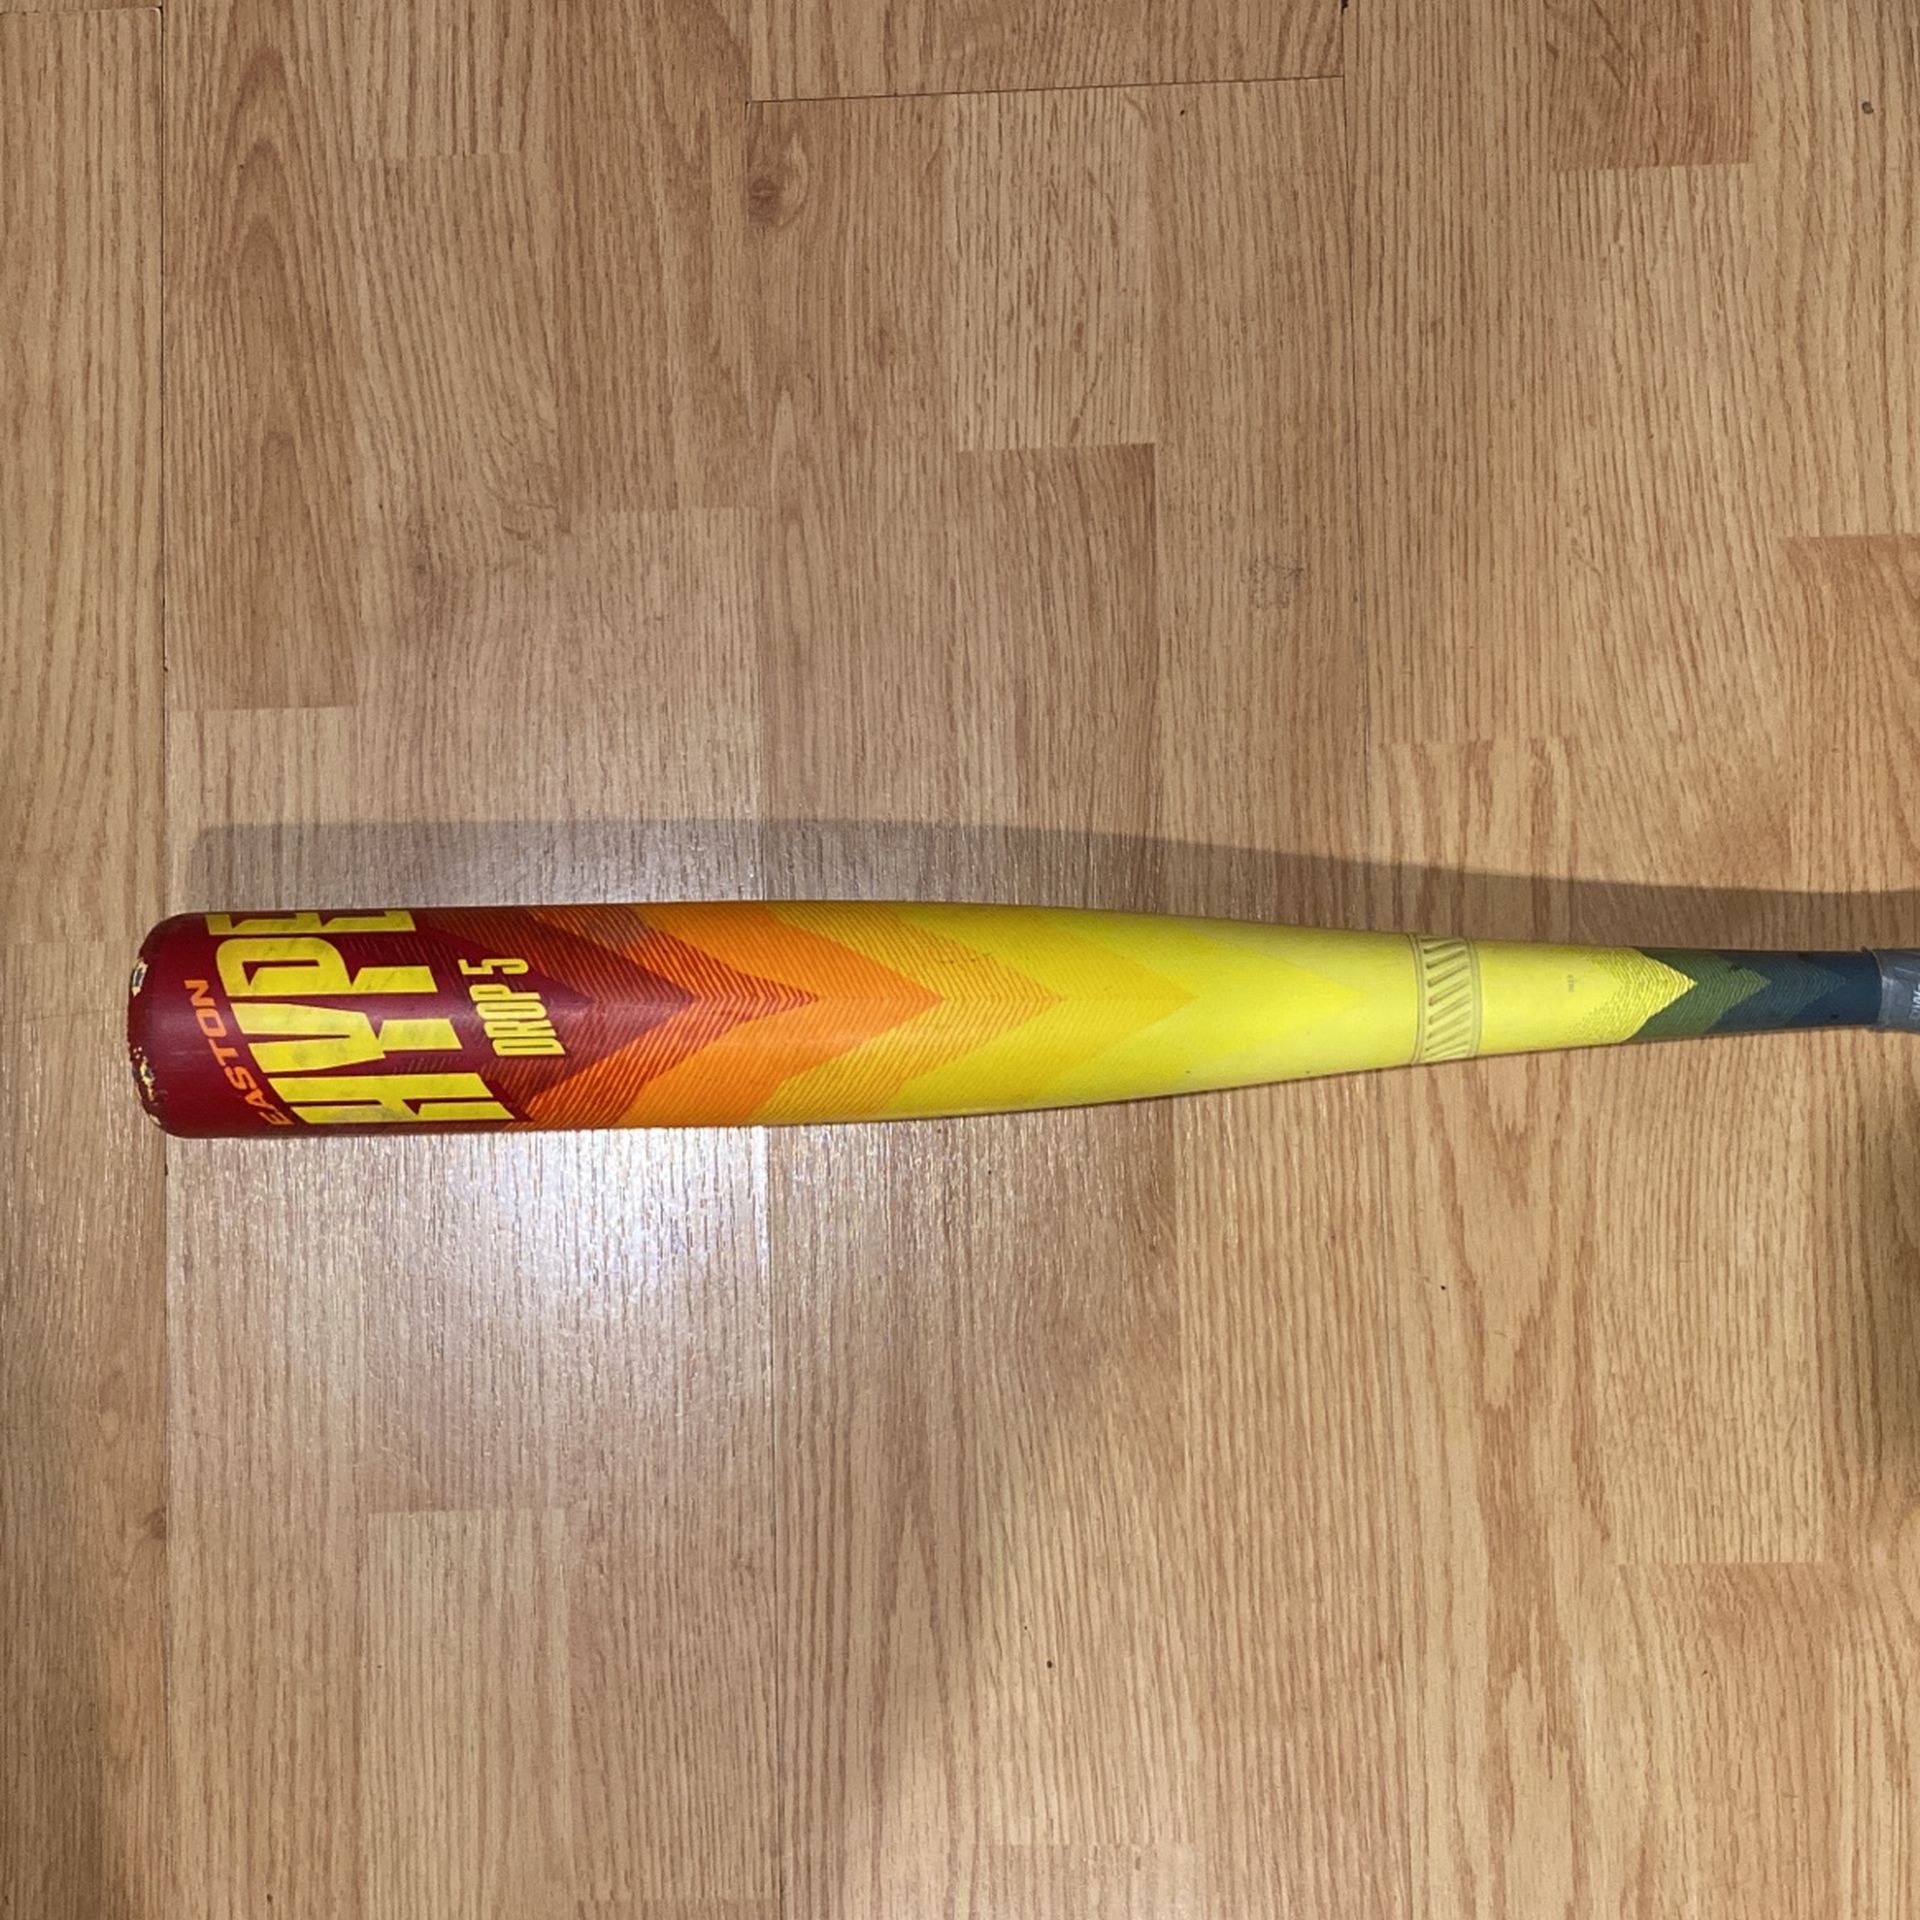 Easton Hype Fire Baseball Bat